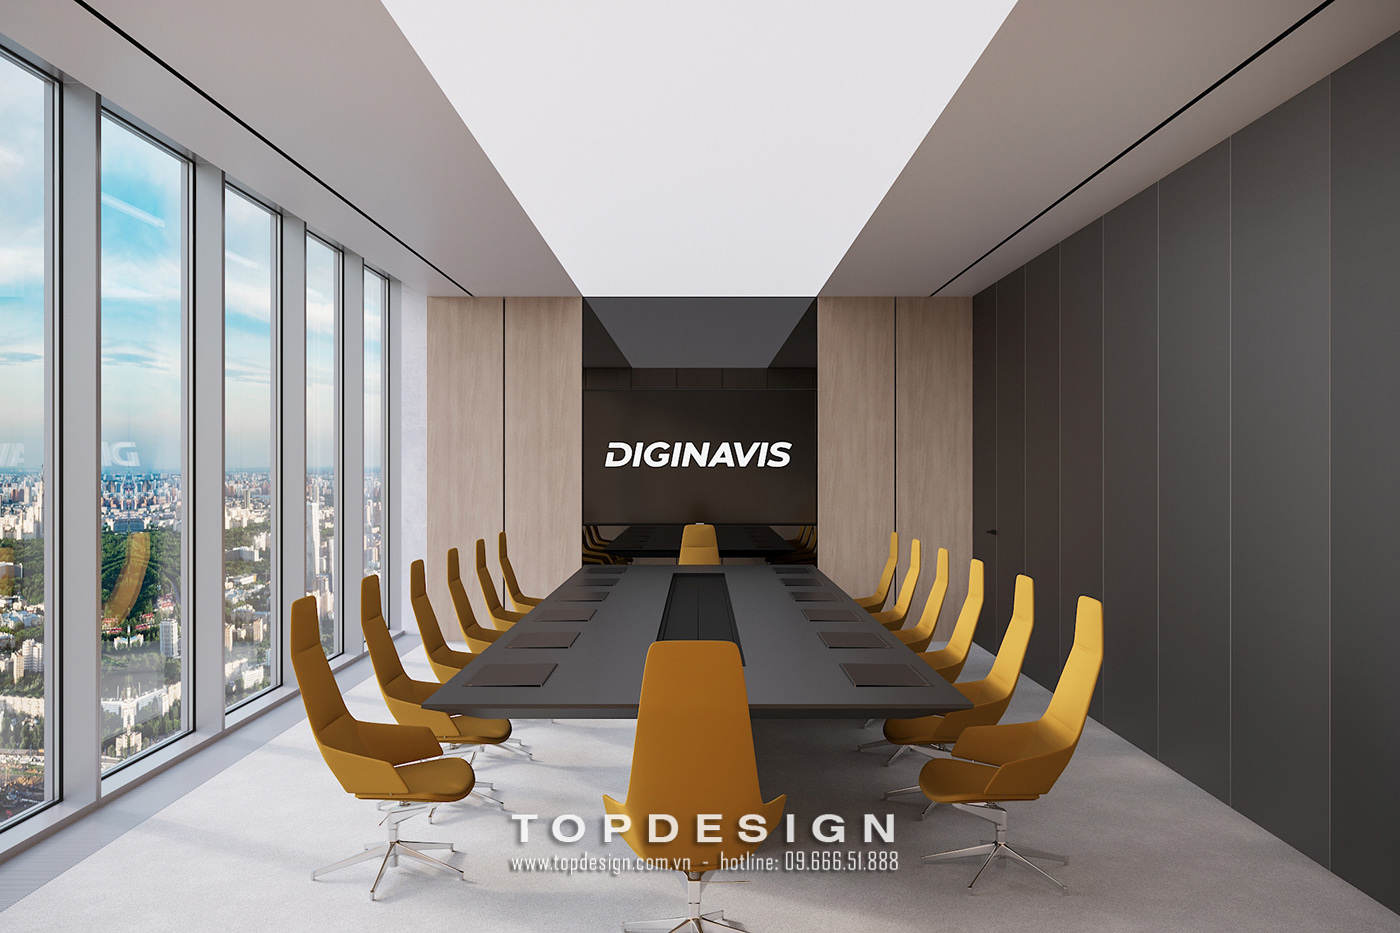 12.Mẫu thiết kế văn phòng Diginavis 190m2 thoải mái, hiện đại_TOPDESIGN